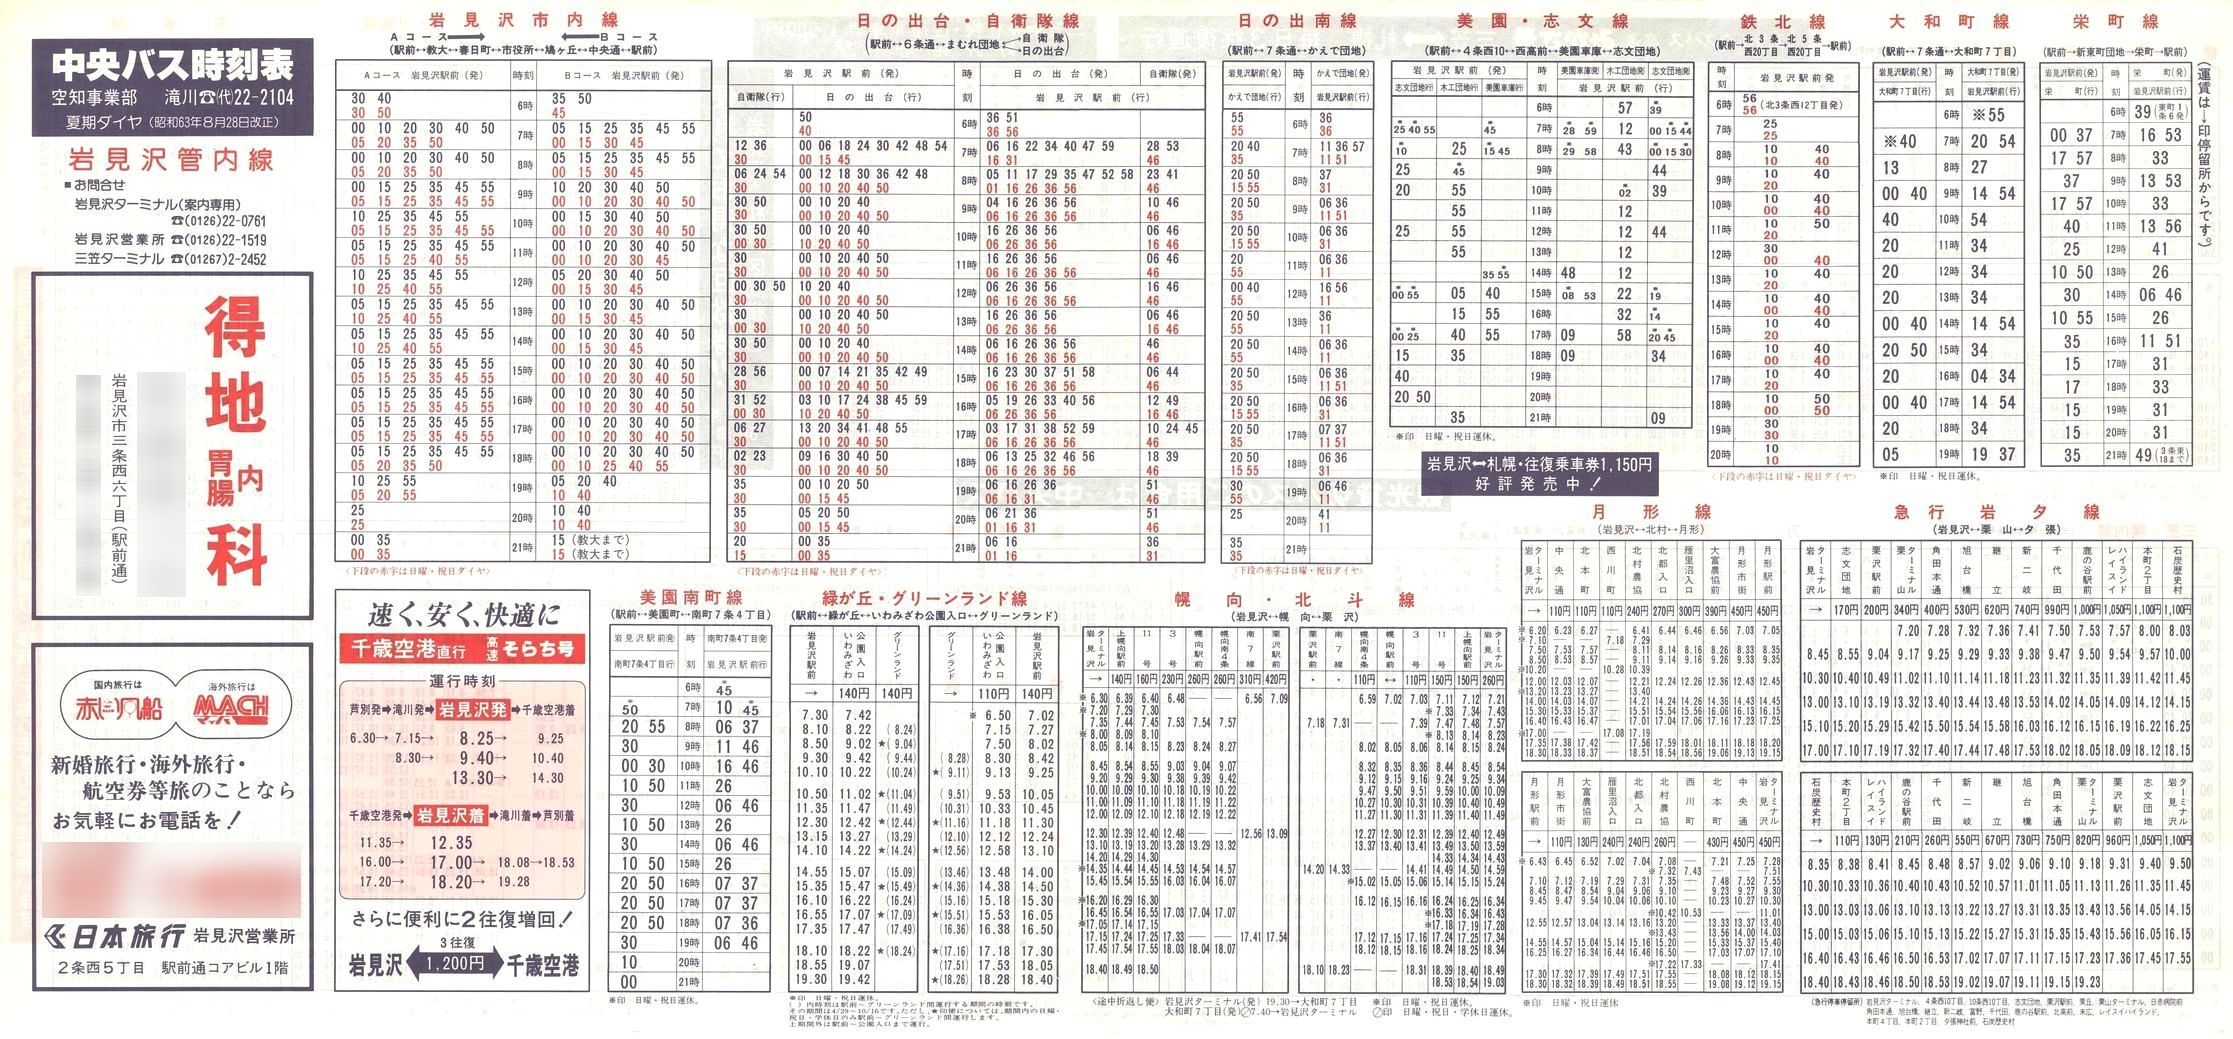 1988-08-28改正_北海道中央バス(空知)_岩見沢管内線時刻表表面